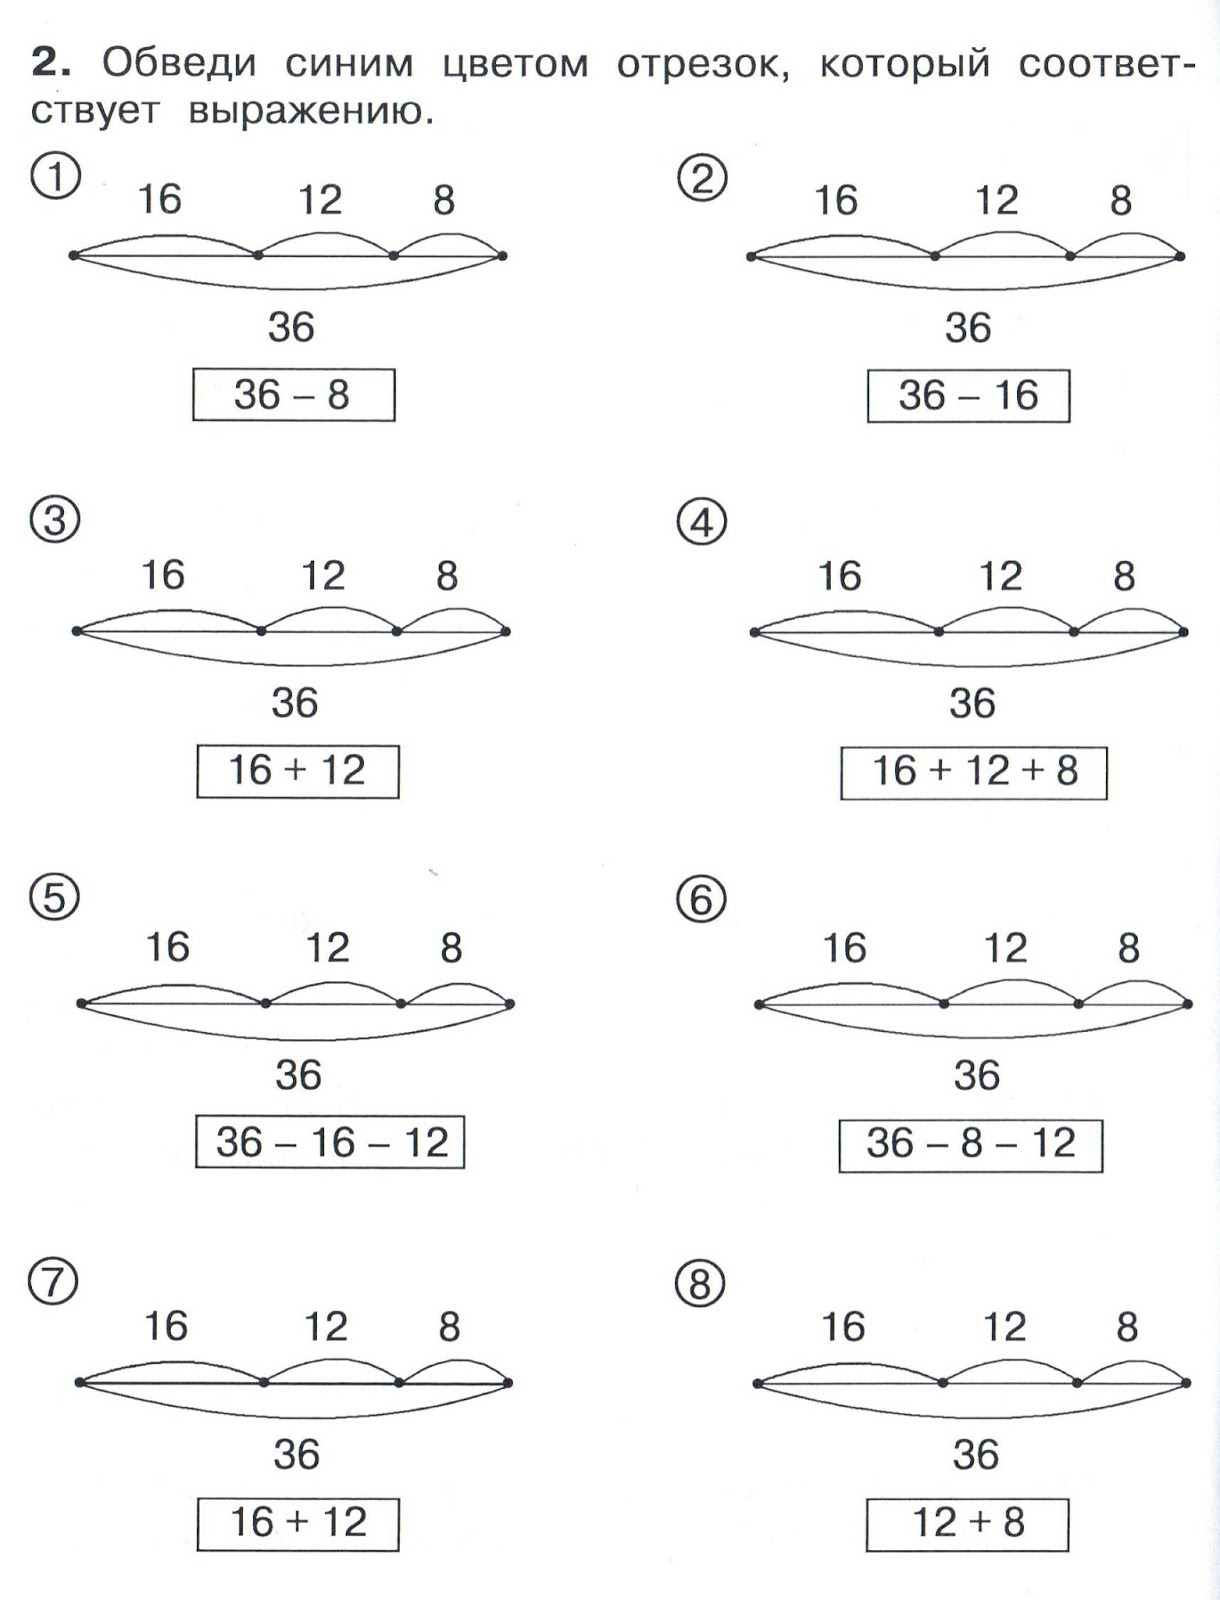 Составить чертеж. Математика Петерсон 2 класс схемы. Задачи со схемами 1 класс математика Петерсон. Задачи по математике 3 класс схематический чертеж к задаче. Схематический чертеж к задаче 2 класс по математике.